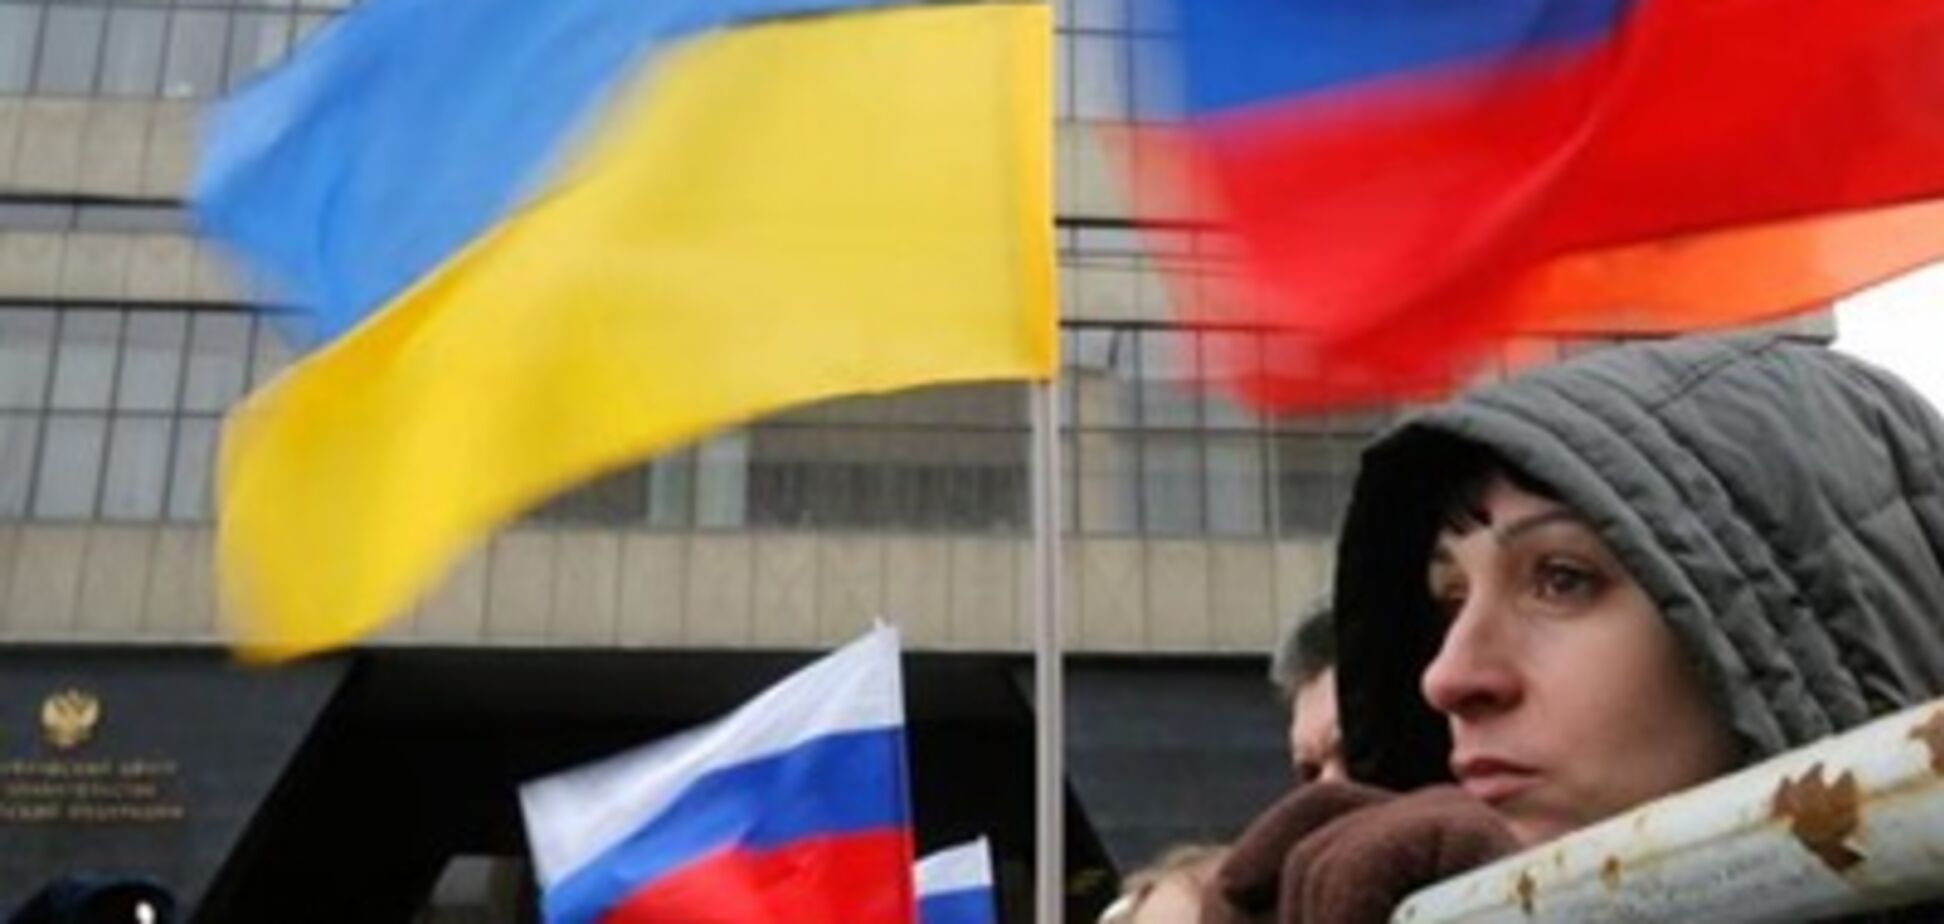 Это чувство сильнее, чем ненависть: журналист откровенно рассказал об отношении к россиянам в Украине